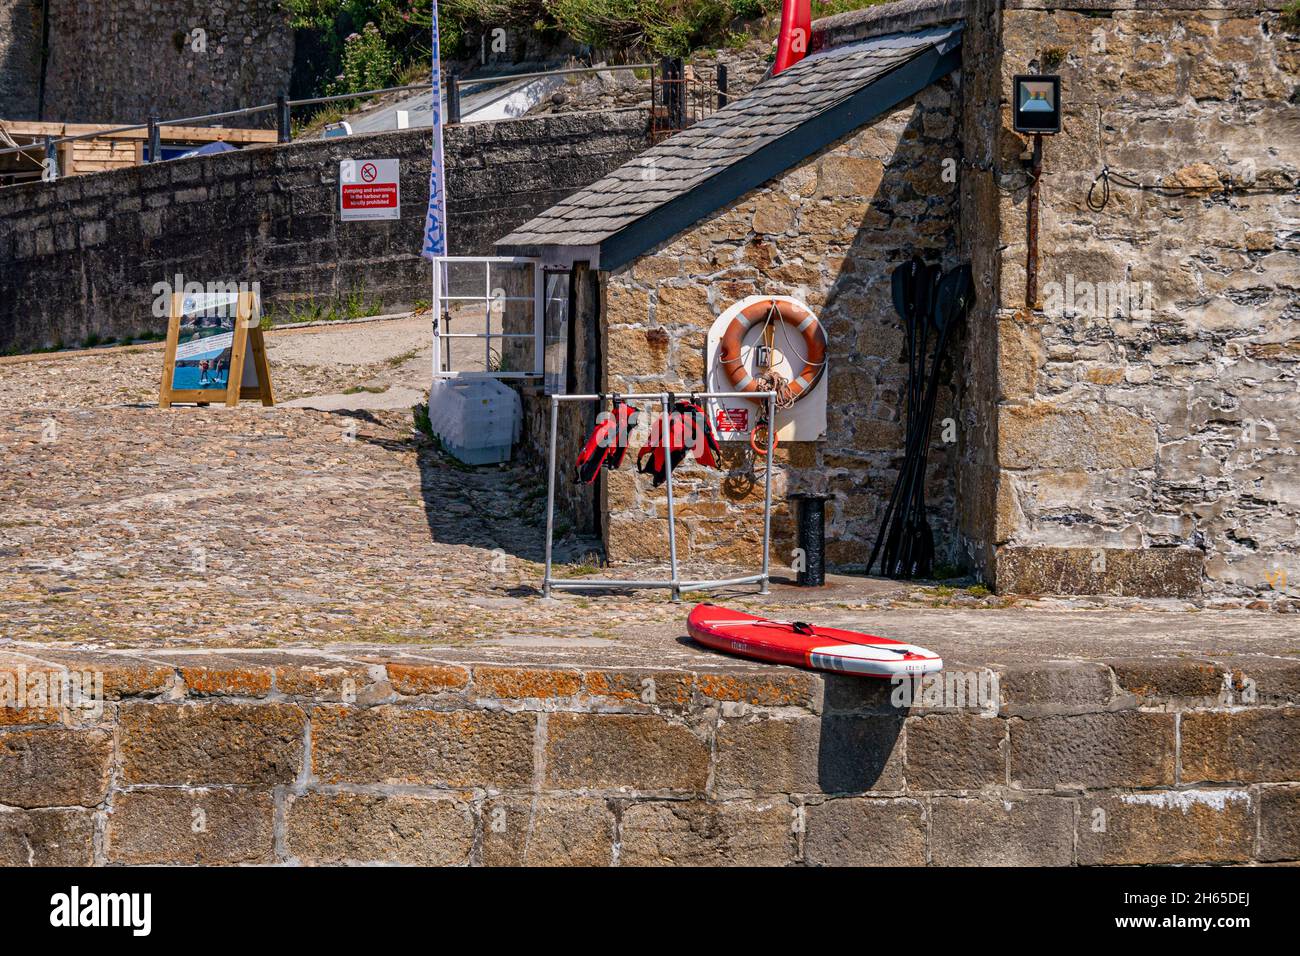 Teil des Hafens von Charlestown, wo Paddleboards von Besuchern gemietet werden können - Charlestown, Cornwall, Großbritannien. Stockfoto